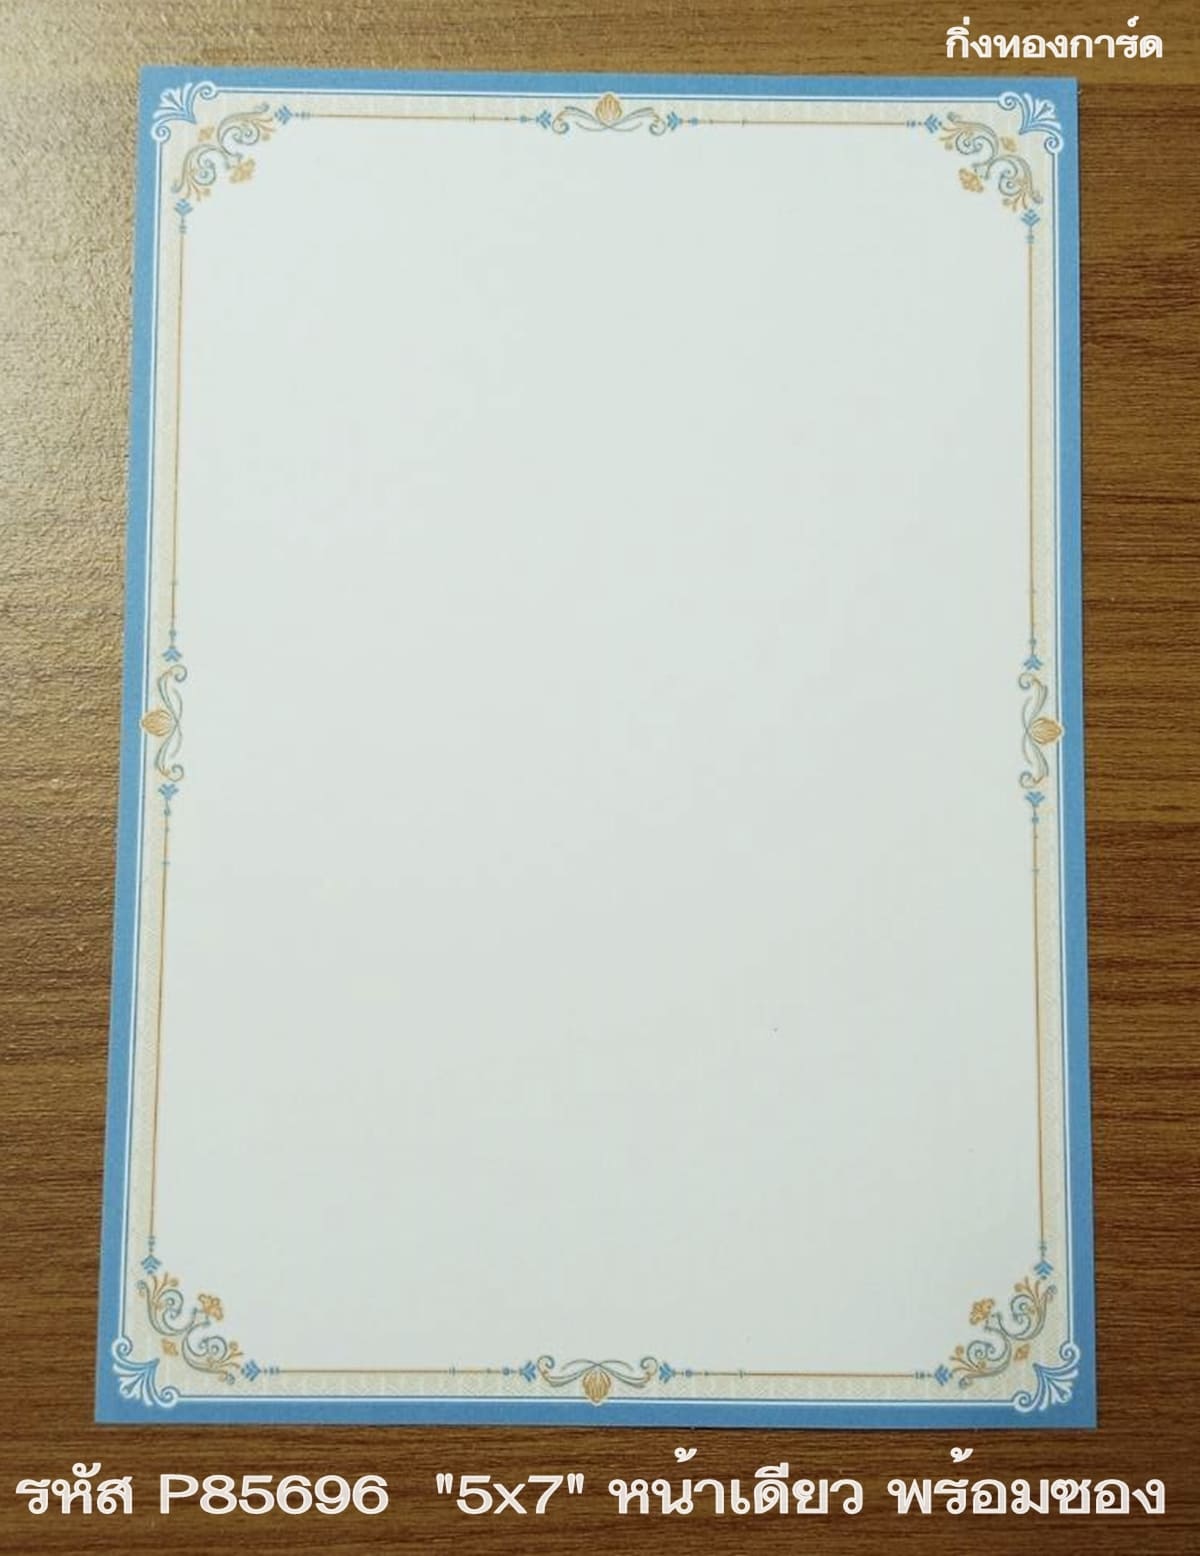 รูปภาพที่1 ของสินค้า : การ์ดเปล่าการ์ดแต่งงาน การ์ดเปล่างานแต่งงาน หน้าเดียว พร้อมซอง ขนาด 5x7 นิ้ว ราคาต่อ 100 ชุด